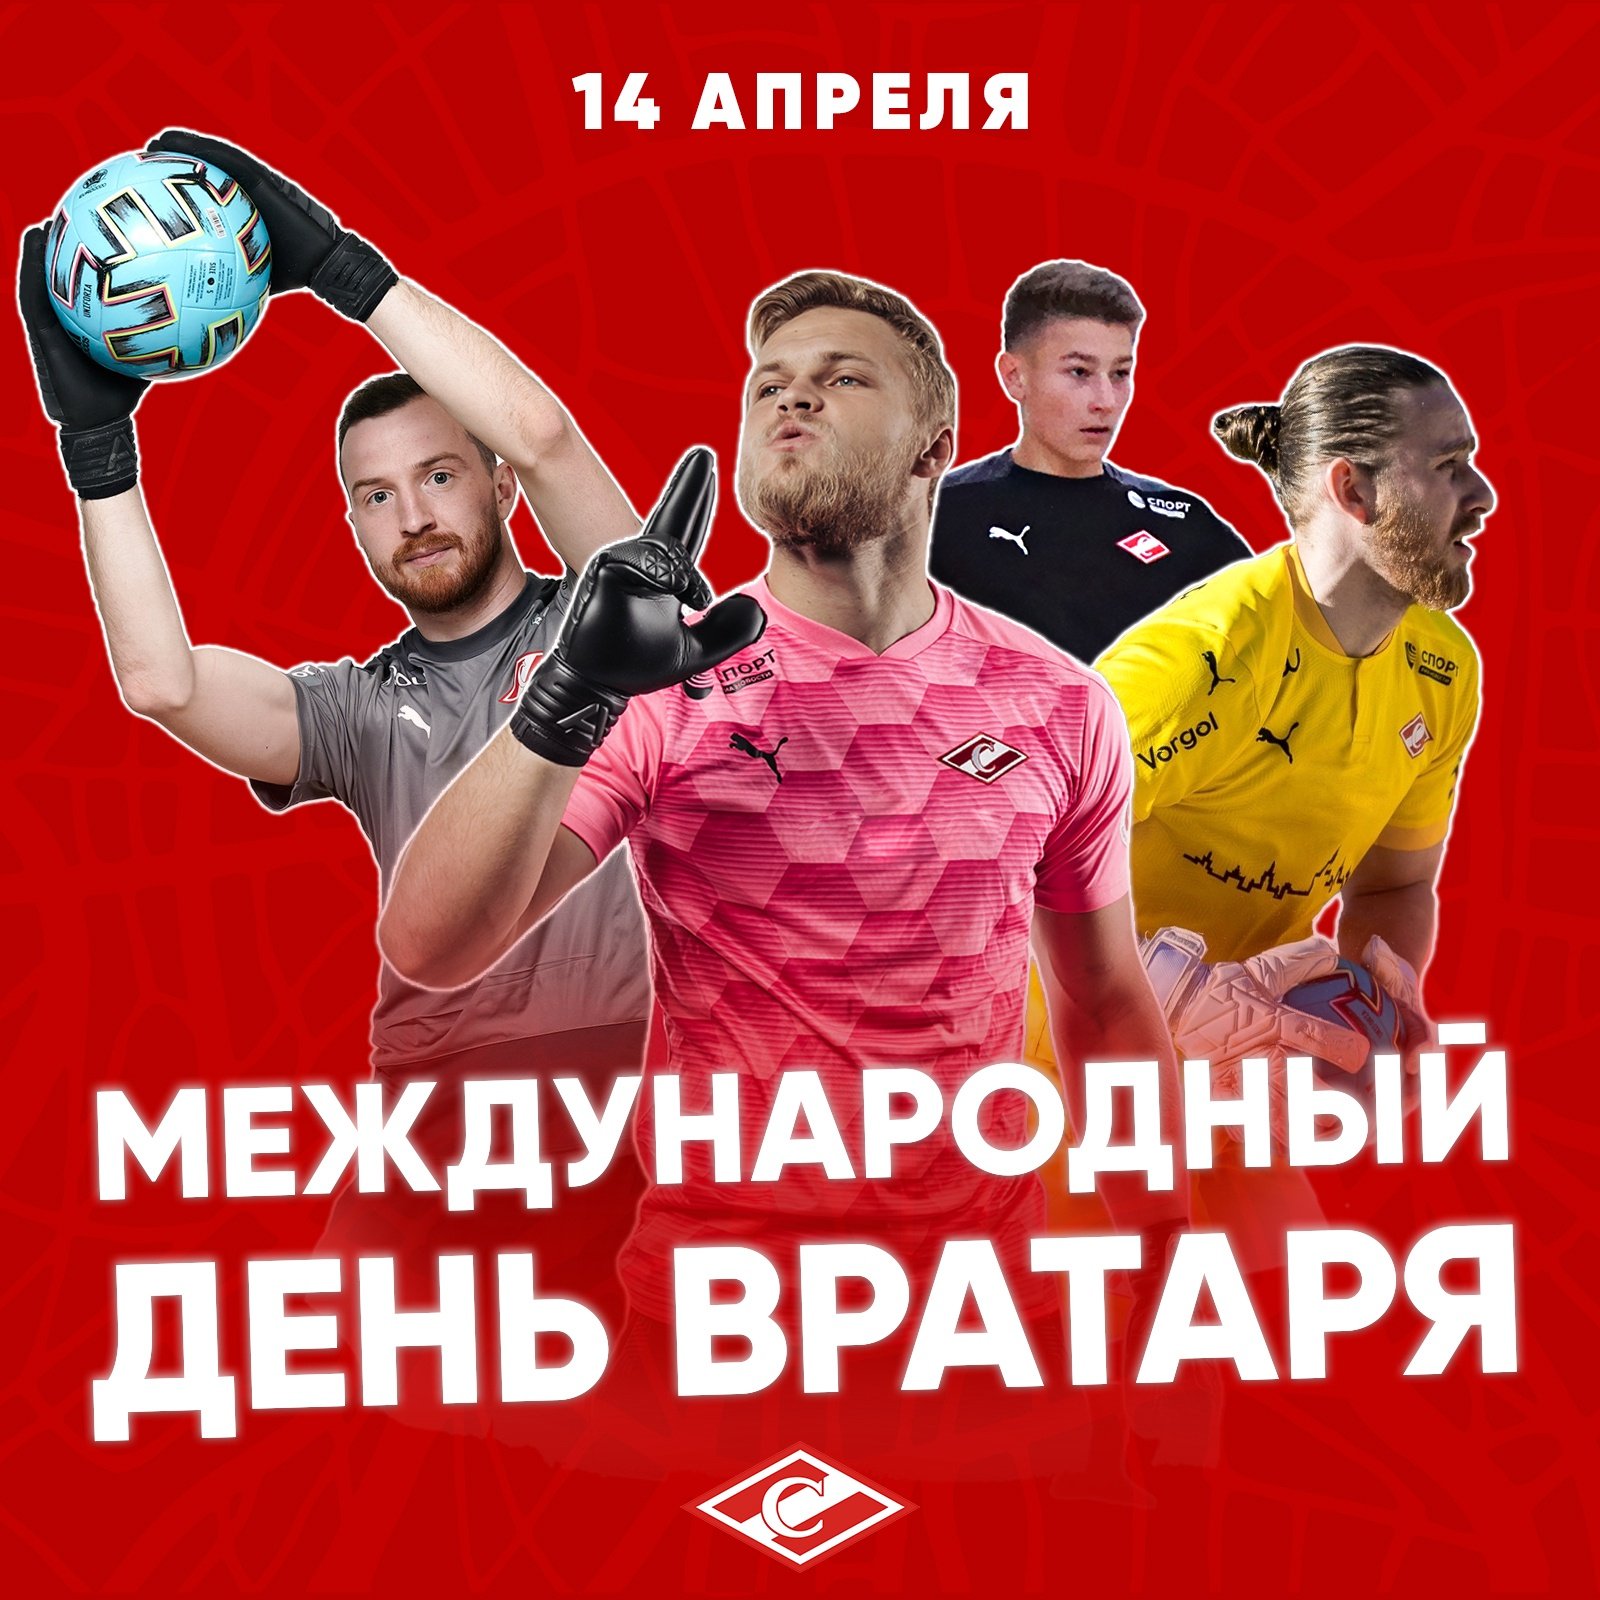 Сегодня день рождения празднует вратарь «Ростова» Сергей Песьяков